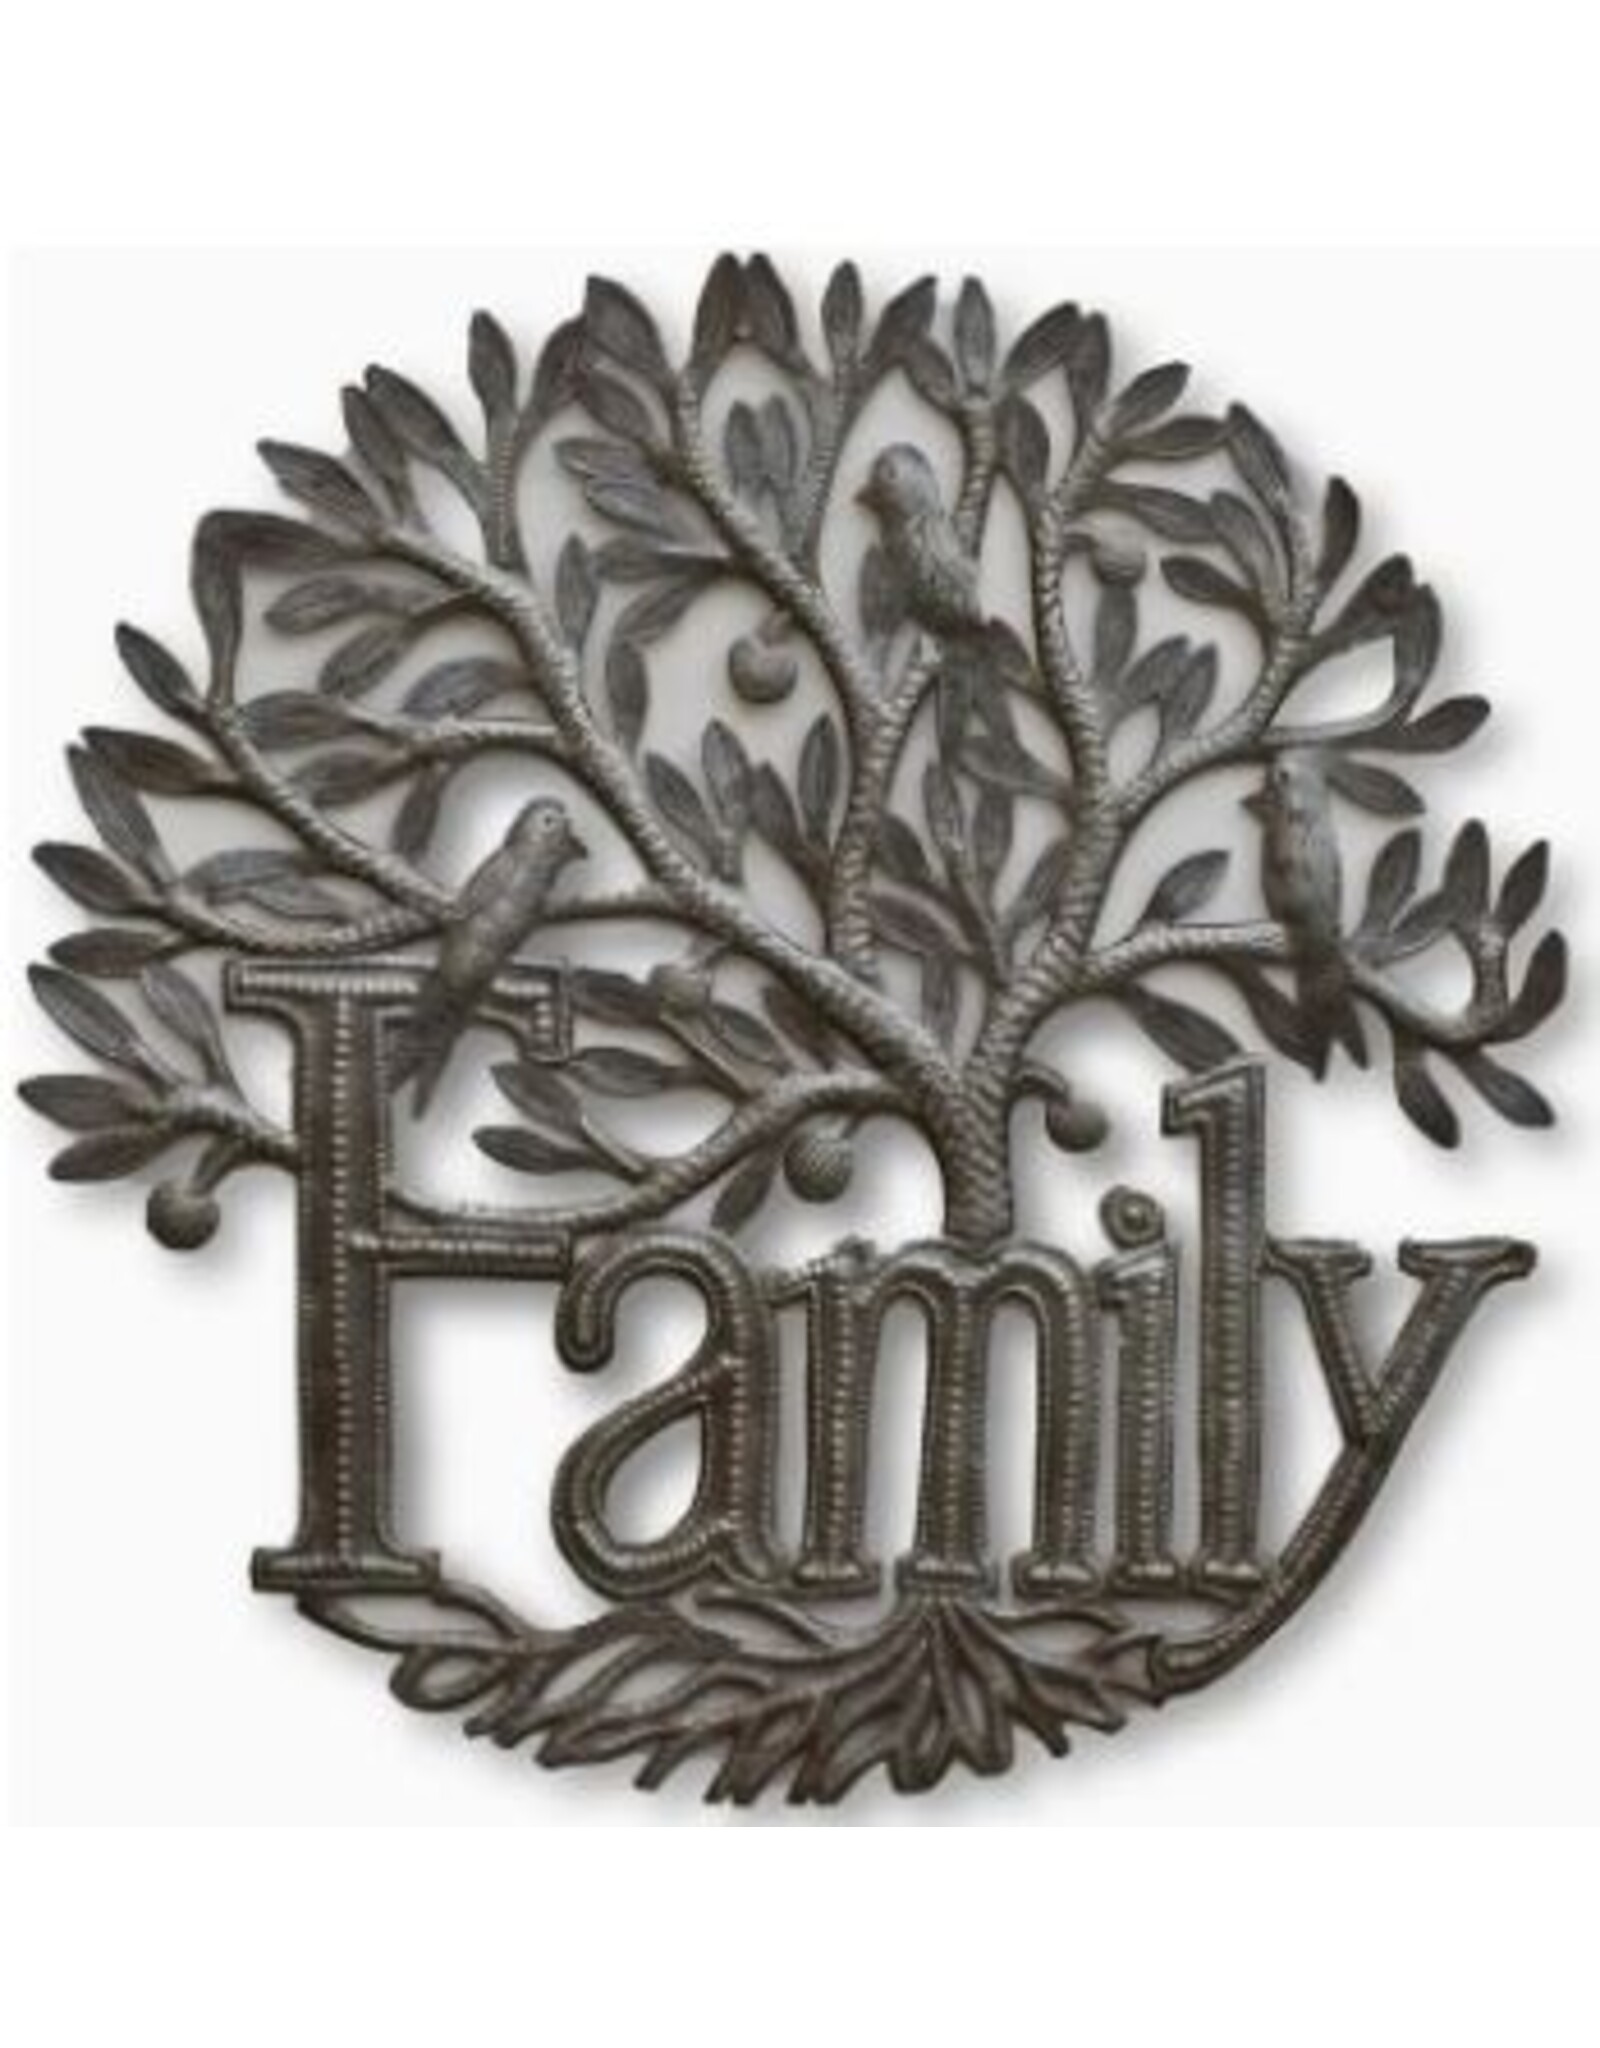 Haiti Family Tree of Life Cut Metal, Haiti